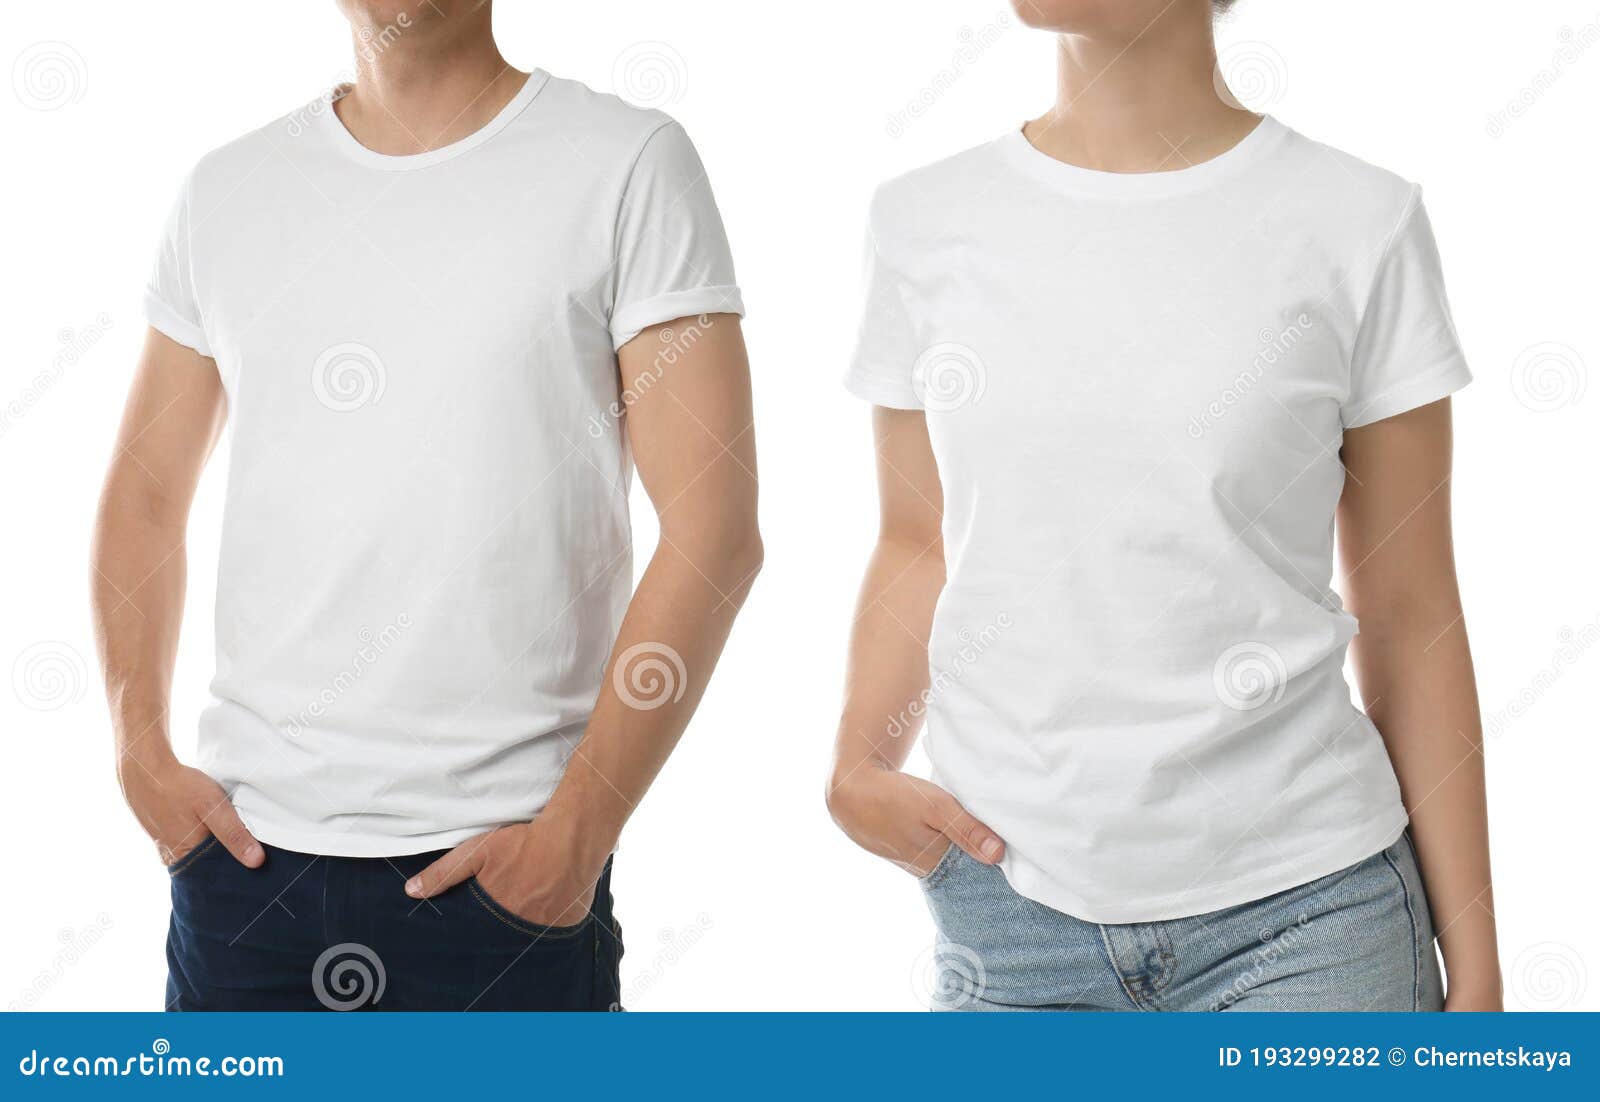 Camisetas De Mujer Diseños De Camisetas De Hombre Camisetas 